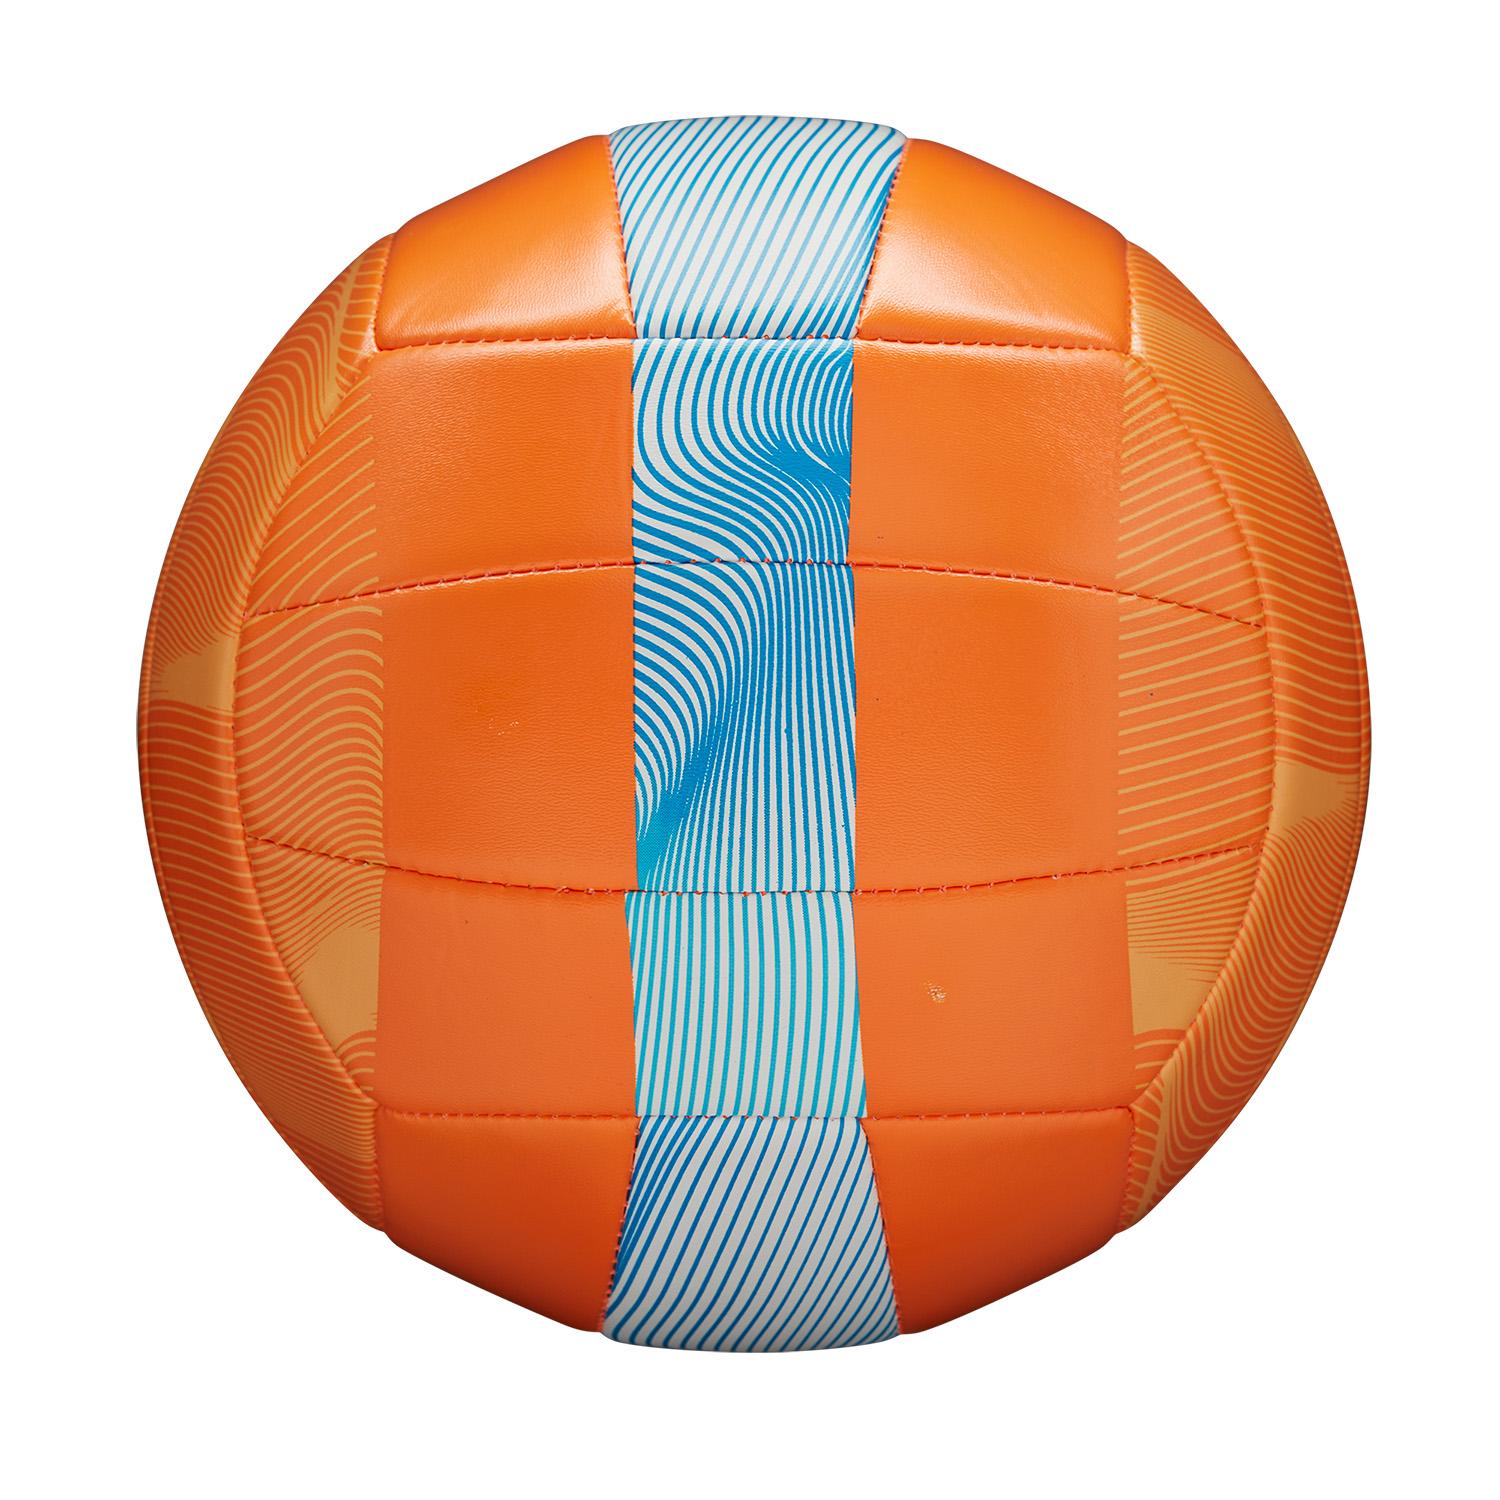 Balón de Volleyball AVP Movement Naranja